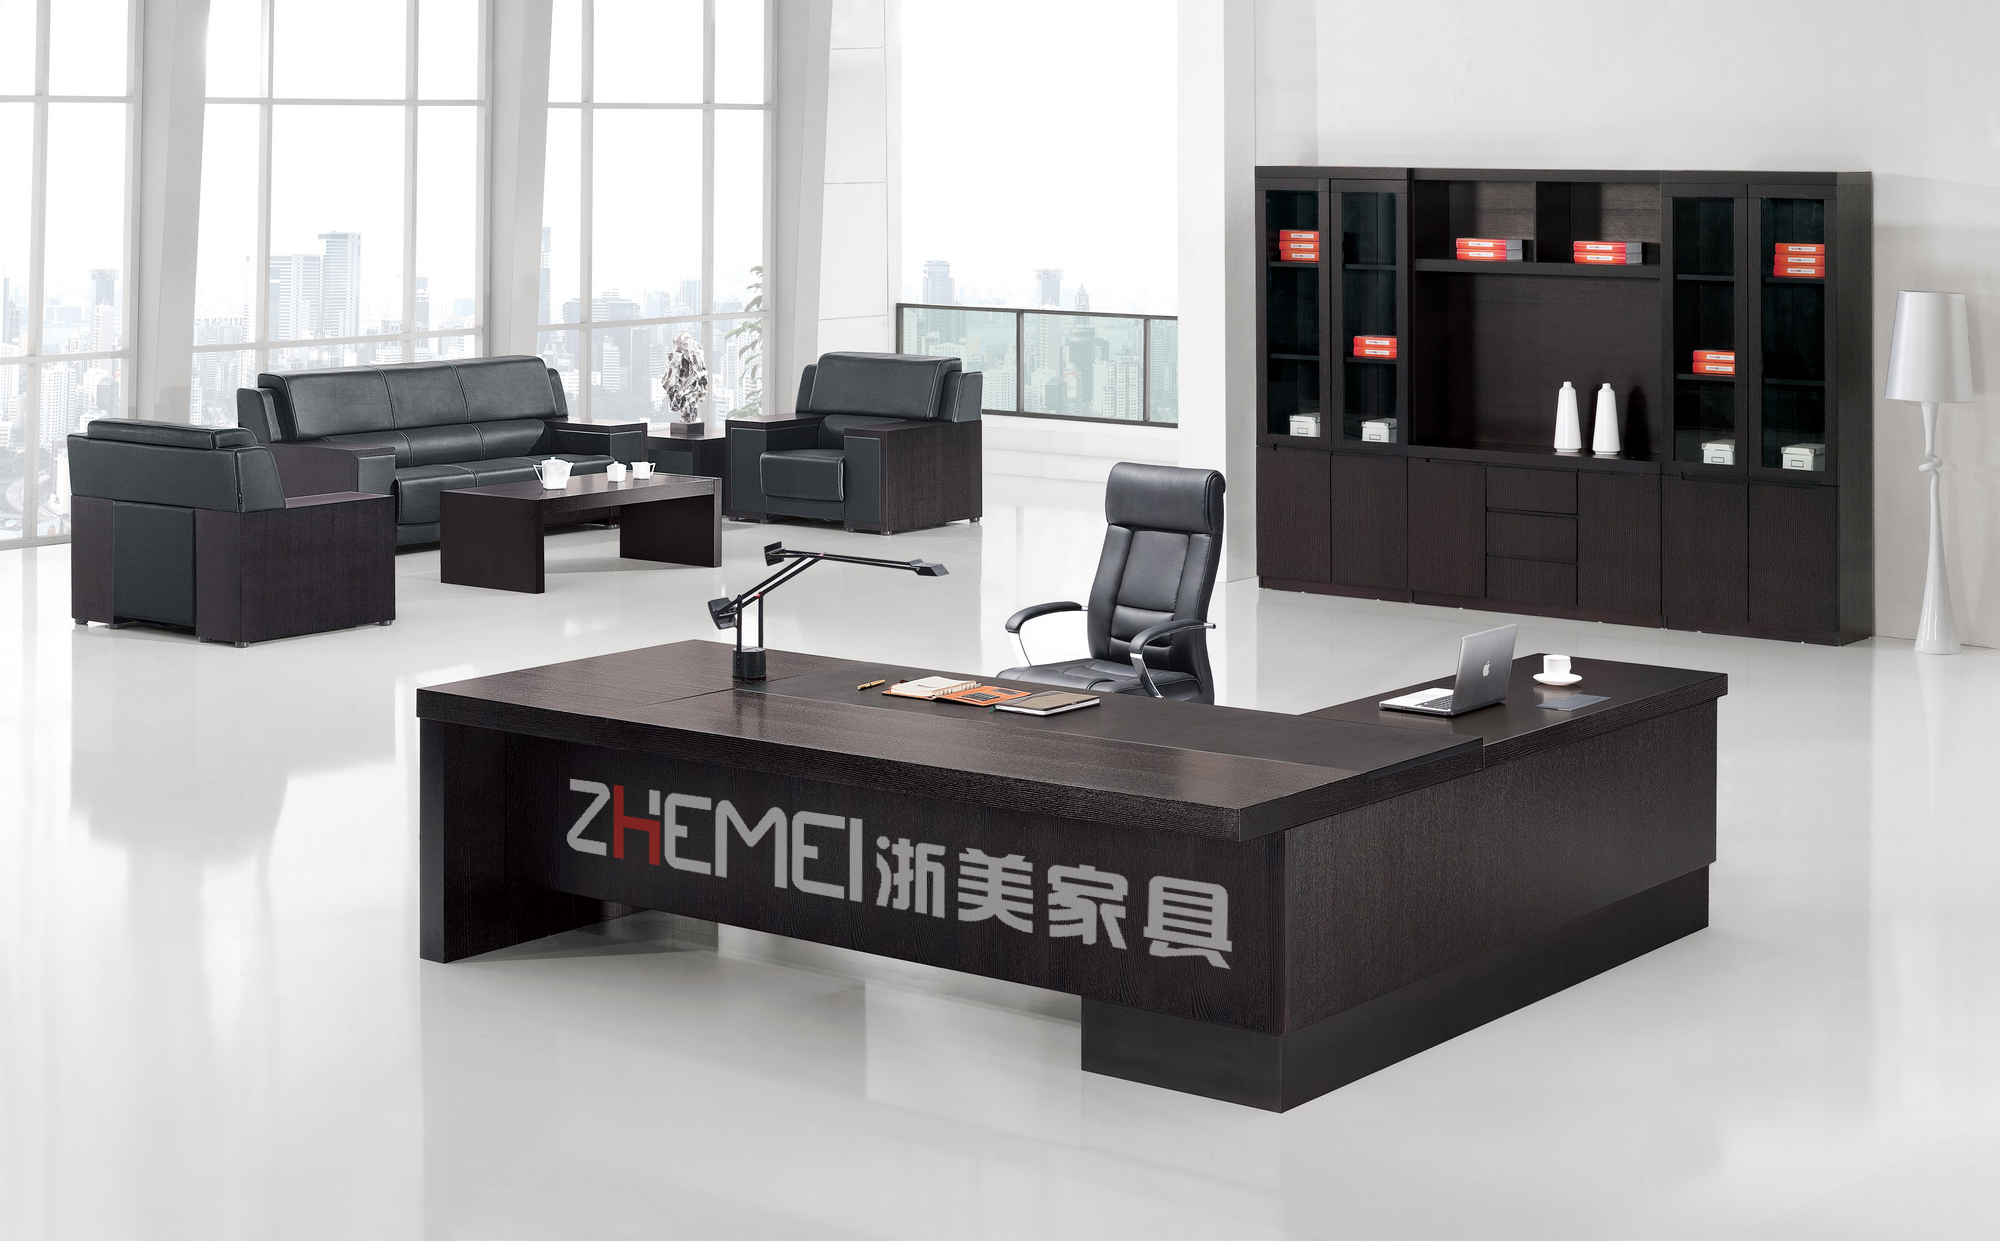 浙美大班台、南京经理办公桌、办公家具、南京办公家具产品AO-D0228正面图